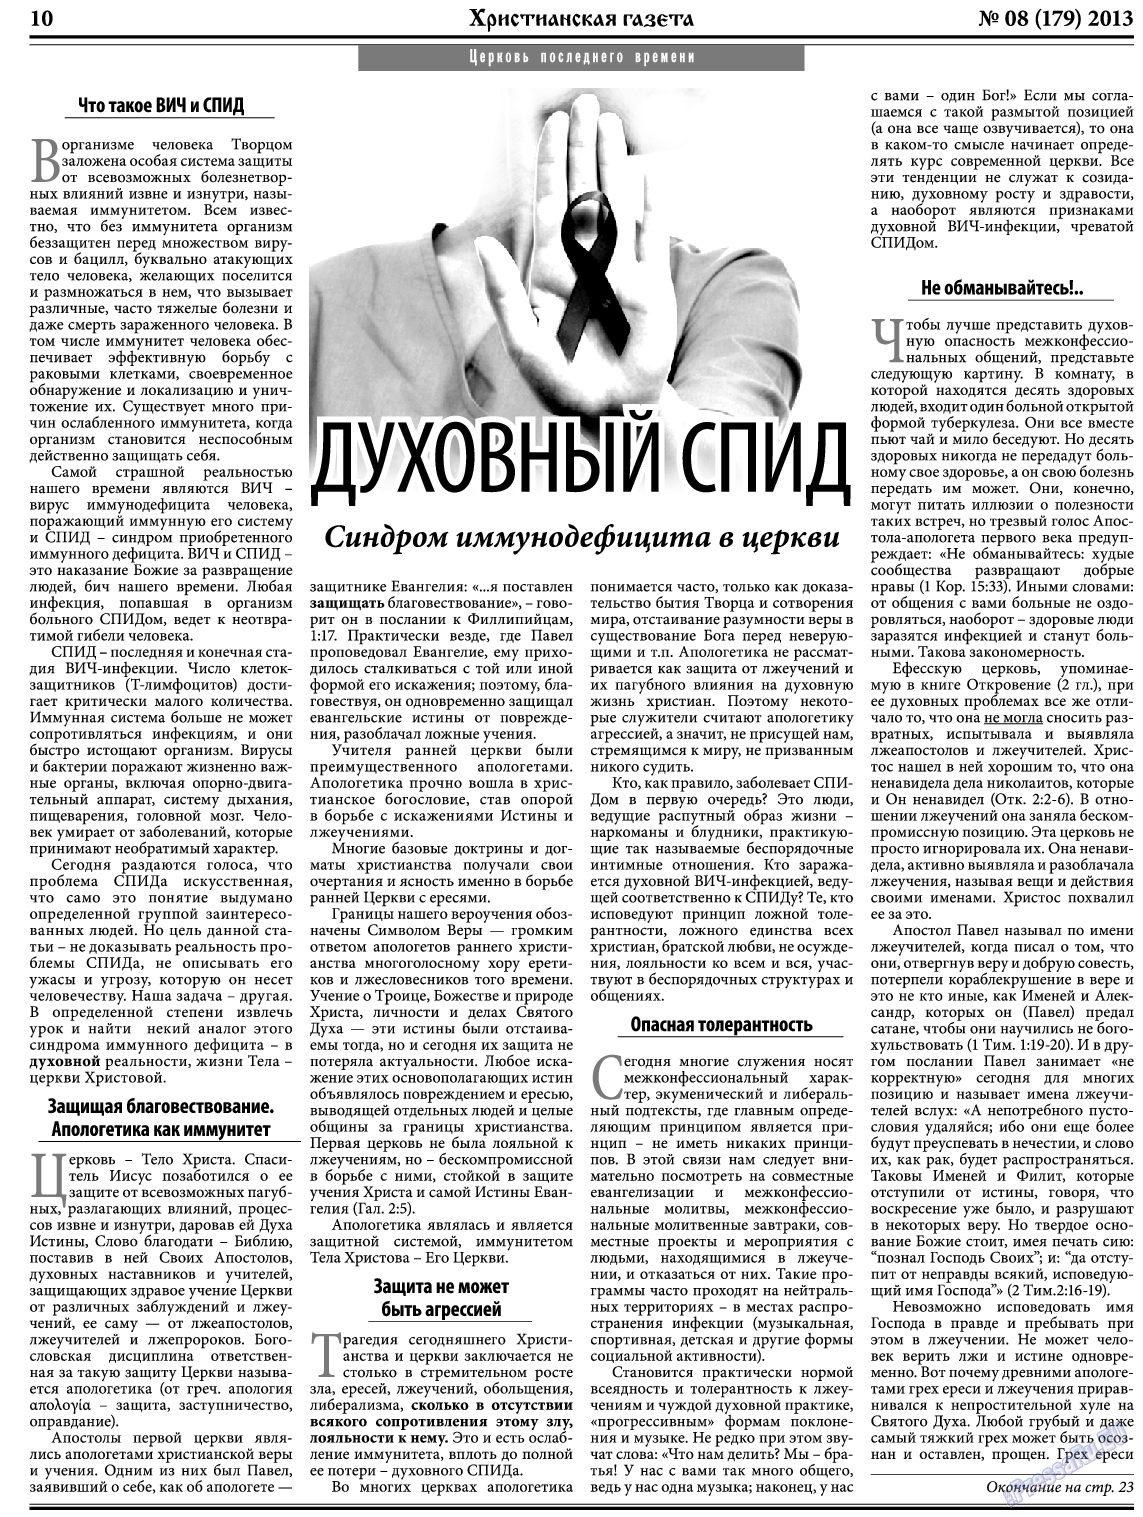 Христианская газета, газета. 2013 №8 стр.10